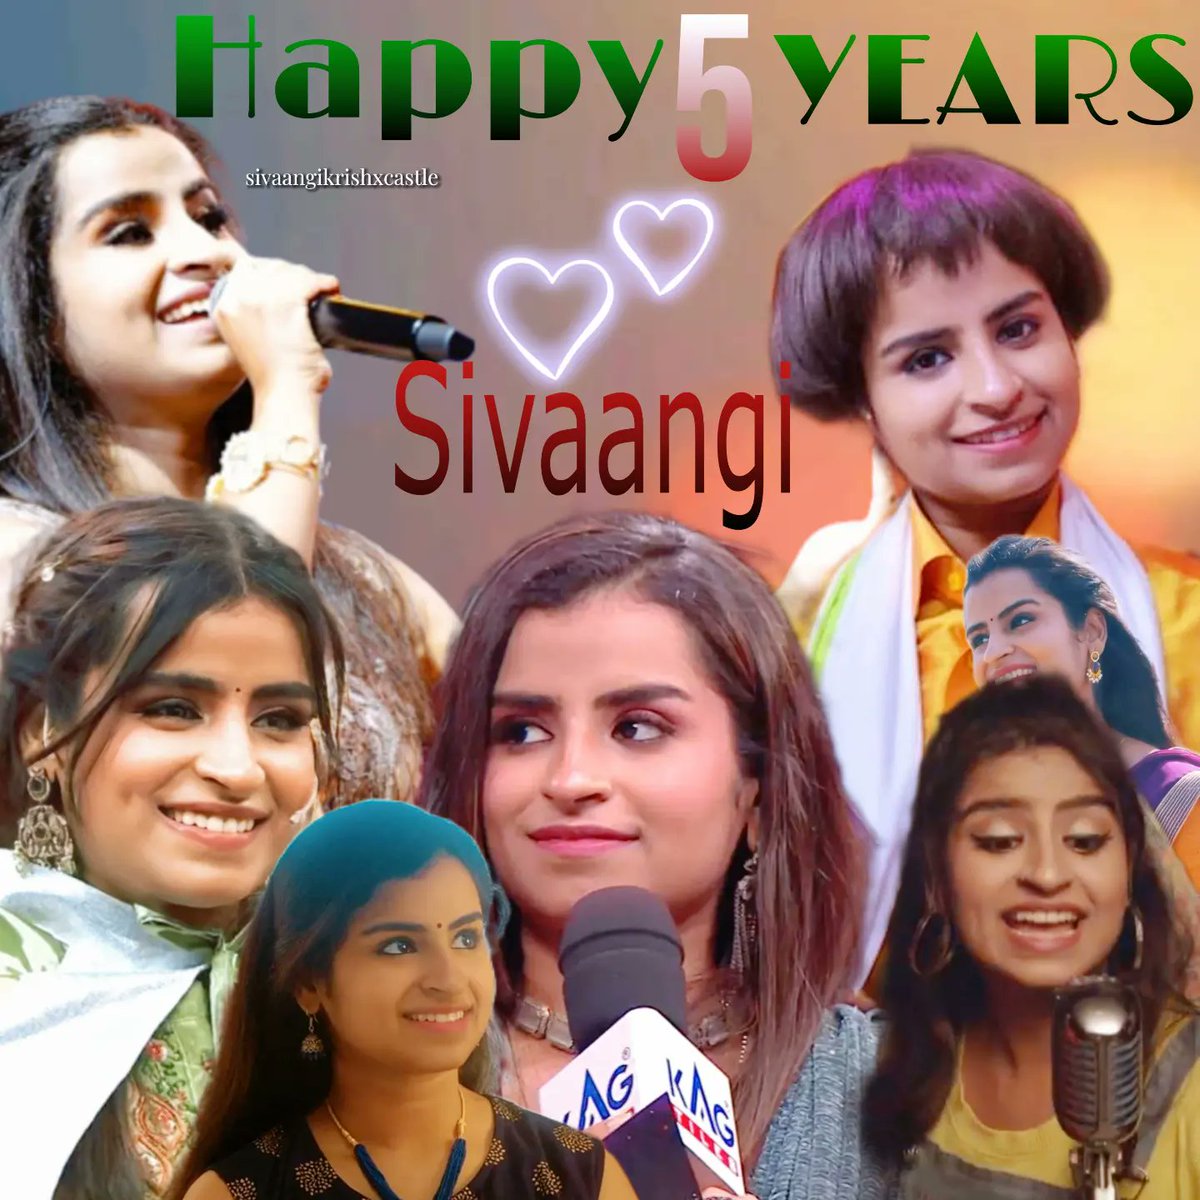 5 YEARS OF SIVAANGI As a Singer Comali Anchor Actress Cook Entertainer @sivaangi_k #Sivaangi